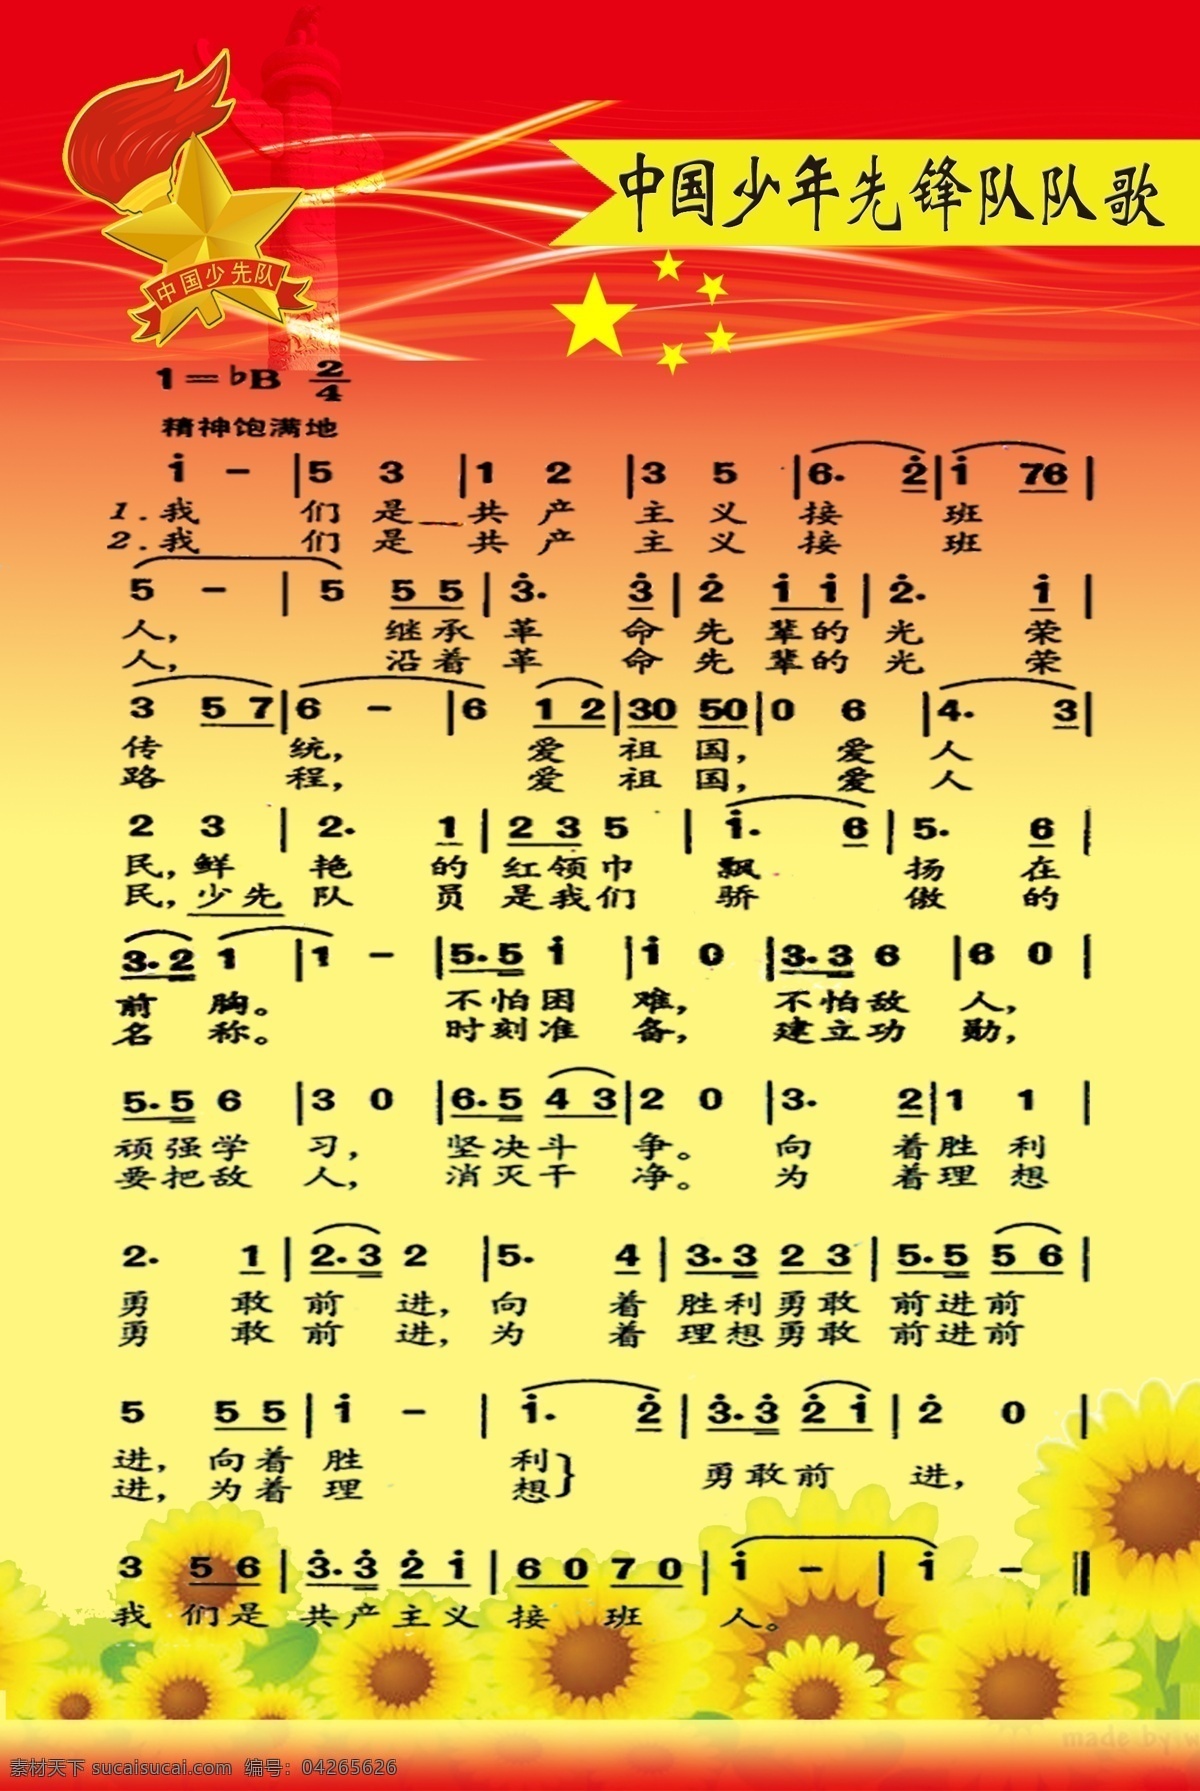 中国少年先锋队 队歌 实际 像素 下 非 高清 少先队队歌 展板 太阳花 队徽 渐变 卡通 展板模板 广告设计模板 源文件